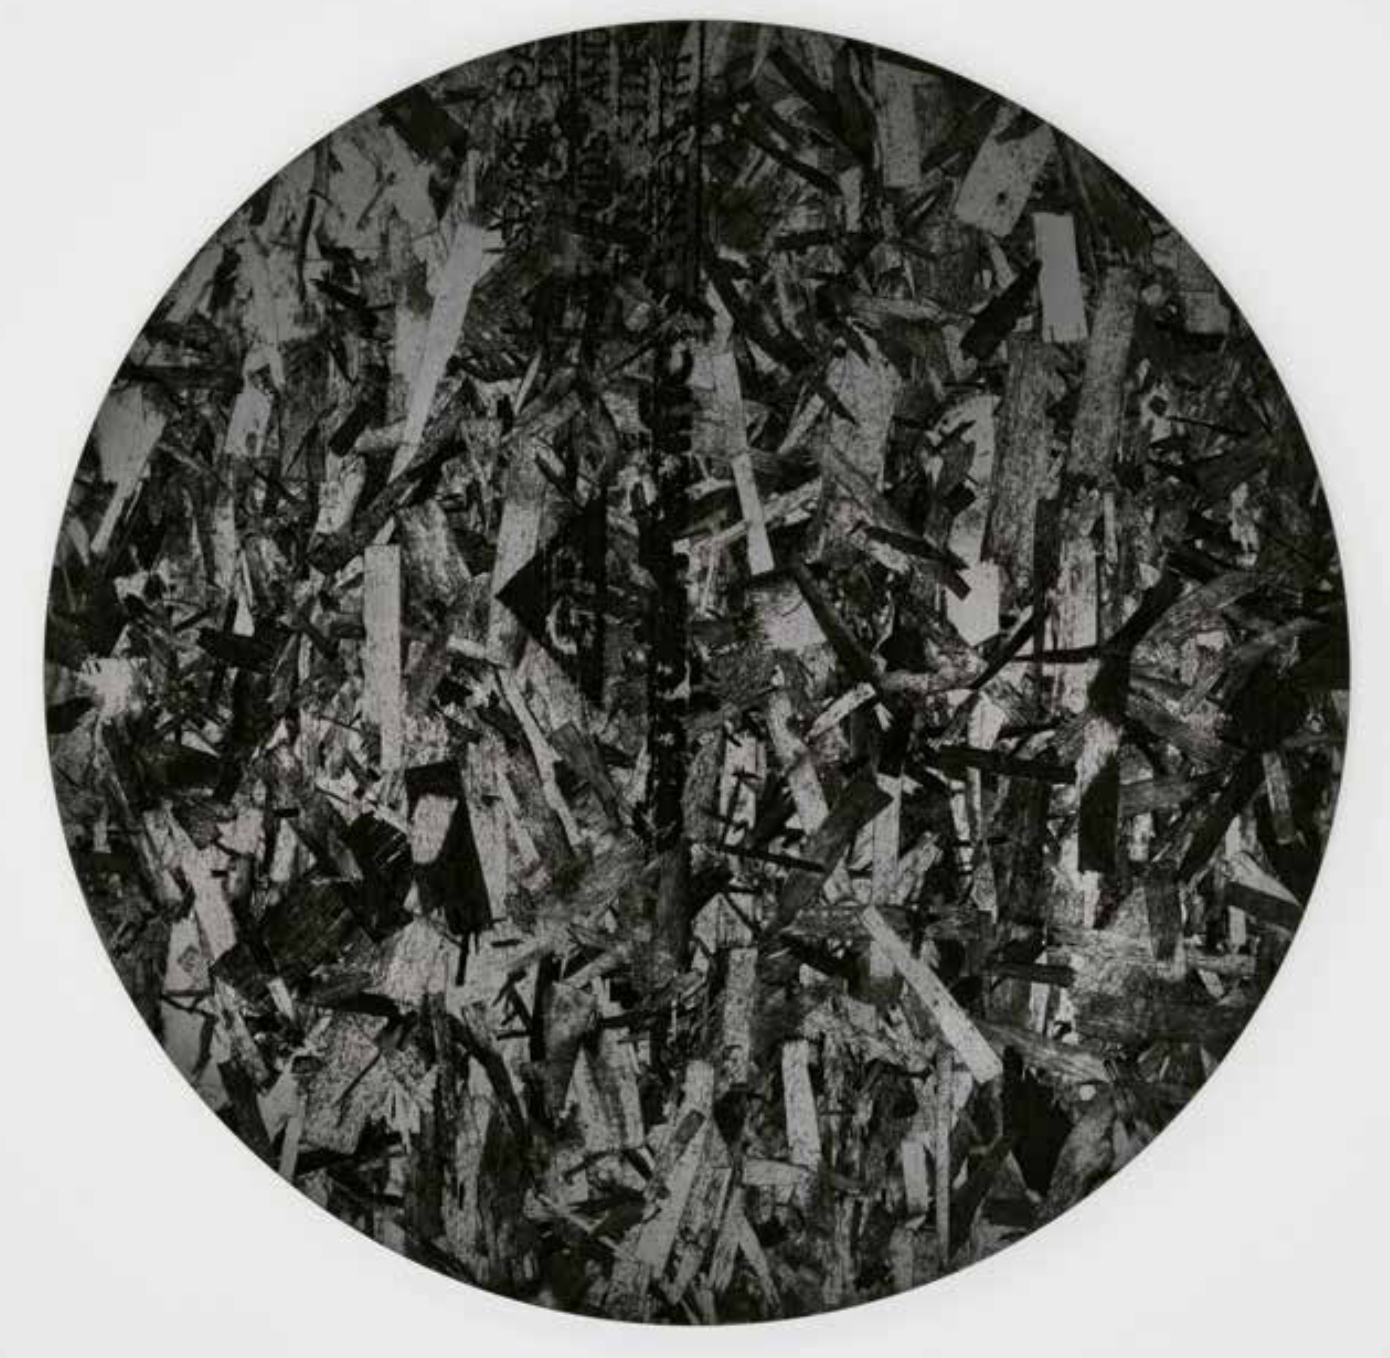 Adam McEwen

Untitled, 2012

Graphite mounted on aluminum panel

28 inches diameter